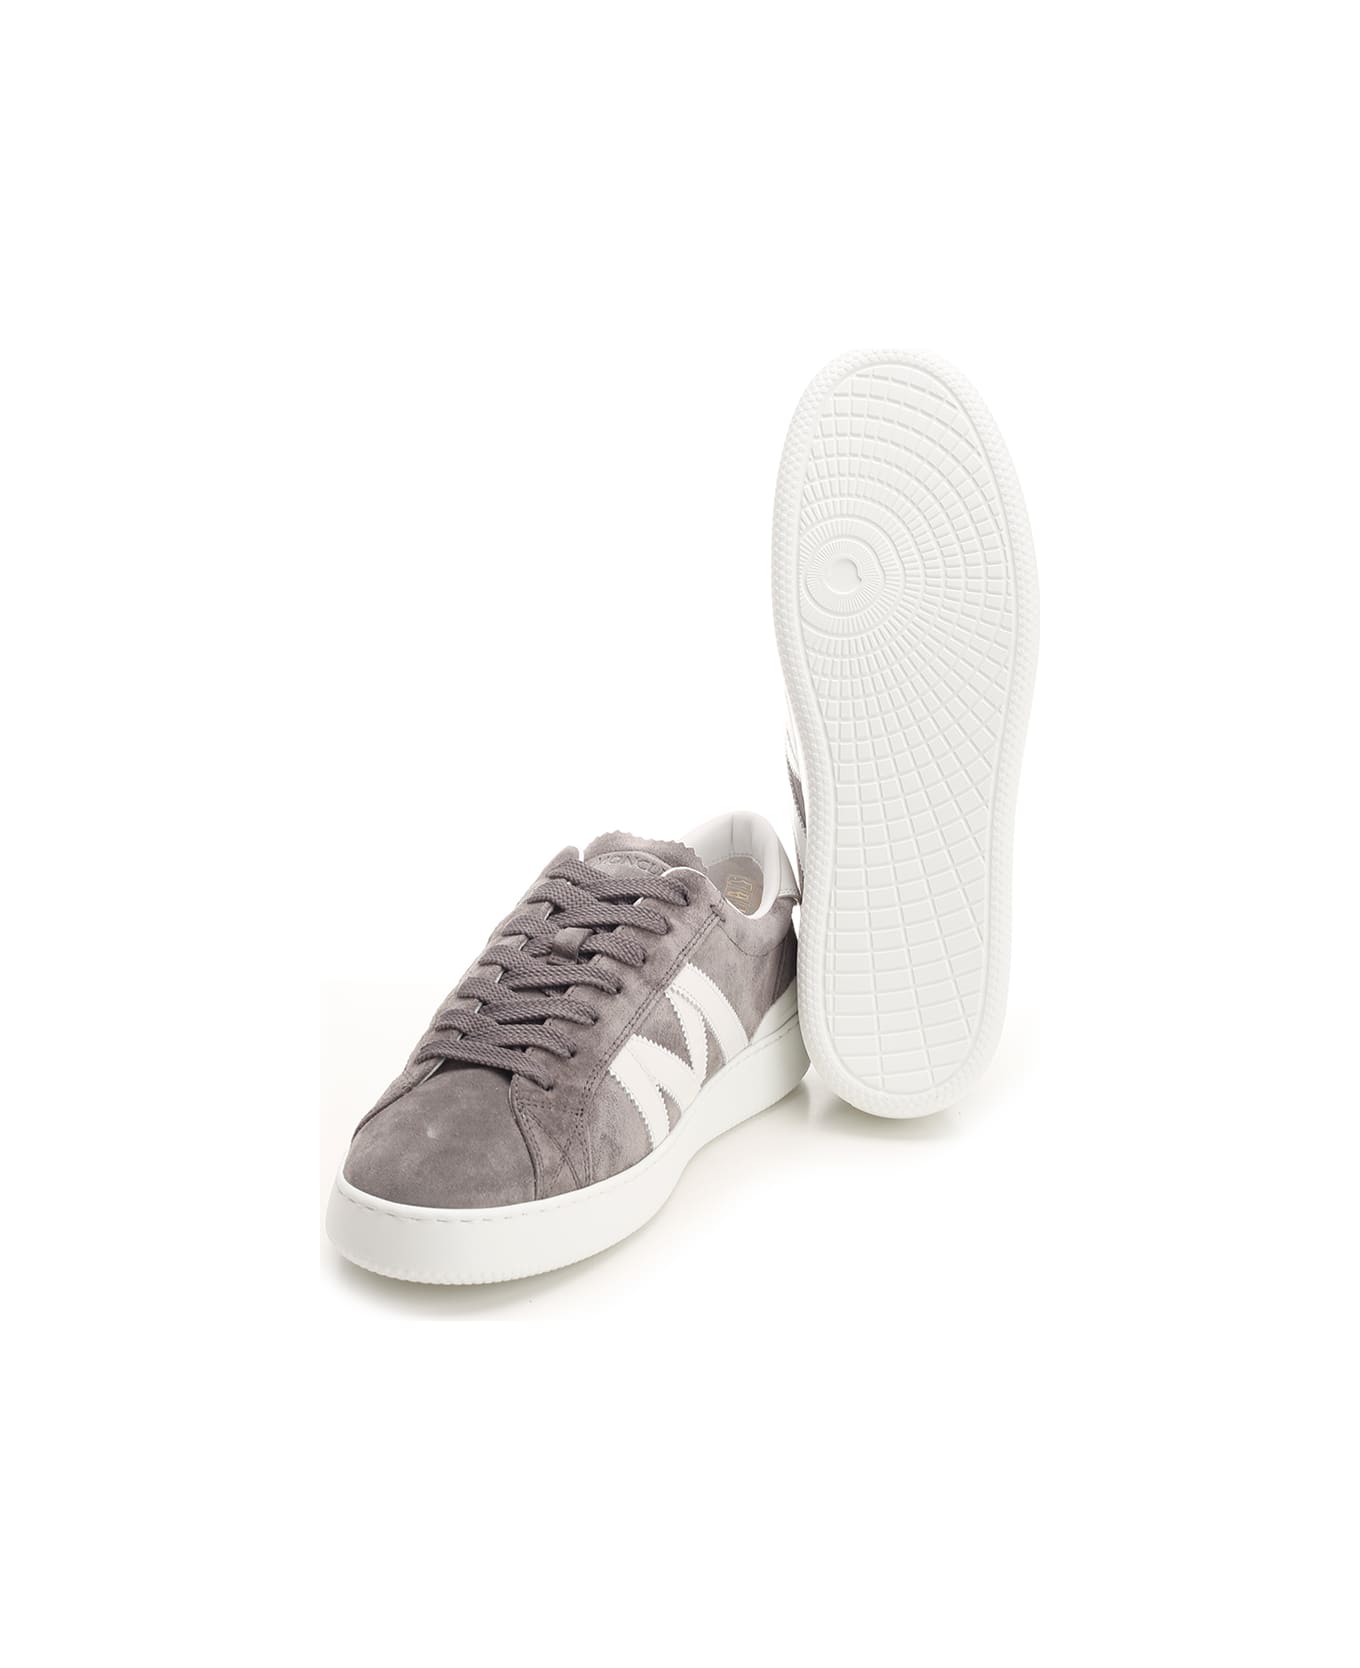 Moncler 'monaco M' Sneakers - Grey